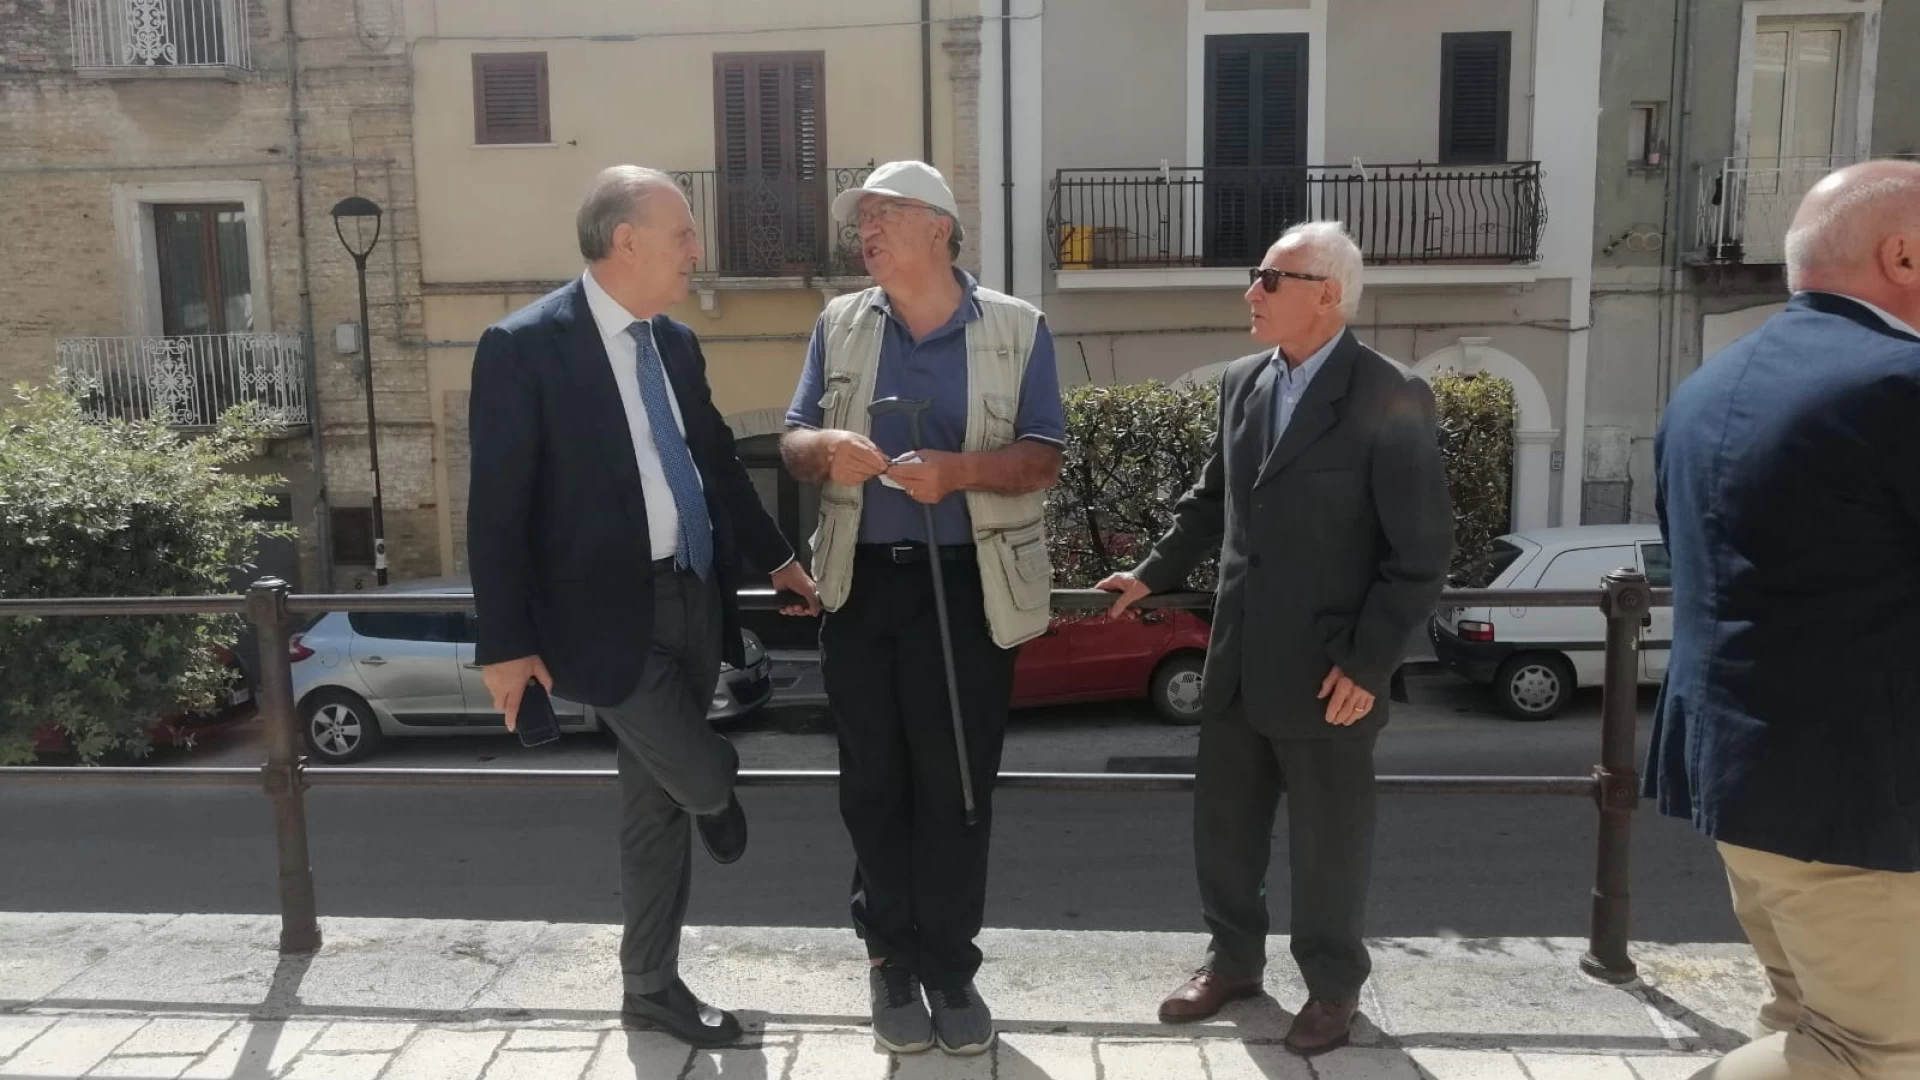 Continua il tour elettorale di Cesa in Molise. “Ho visitato fino ad ora oltre 100 comuni”.